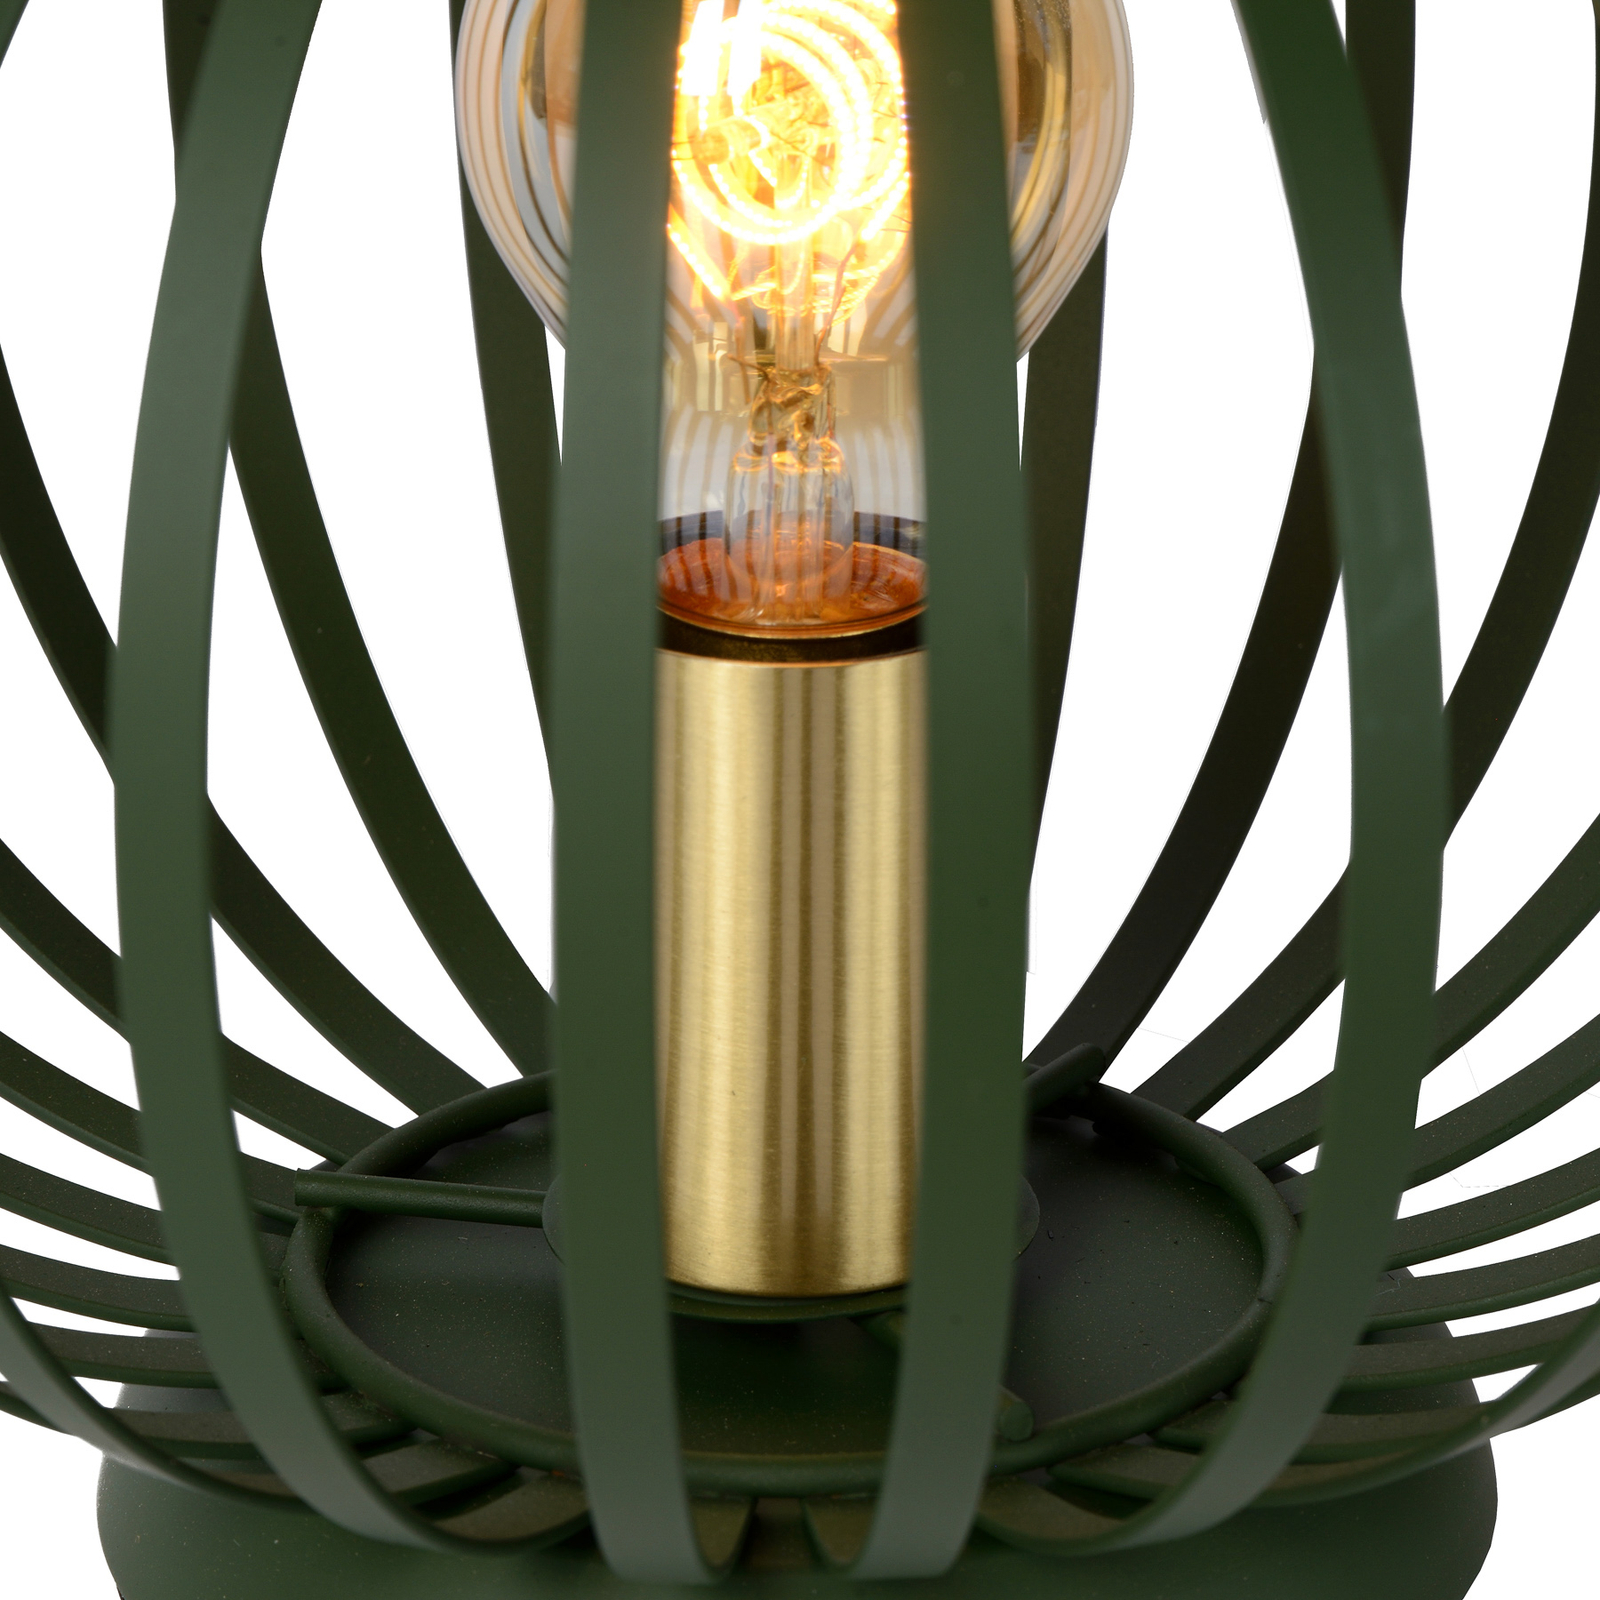 Tafellamp Manuela met kooikap, groen/goud